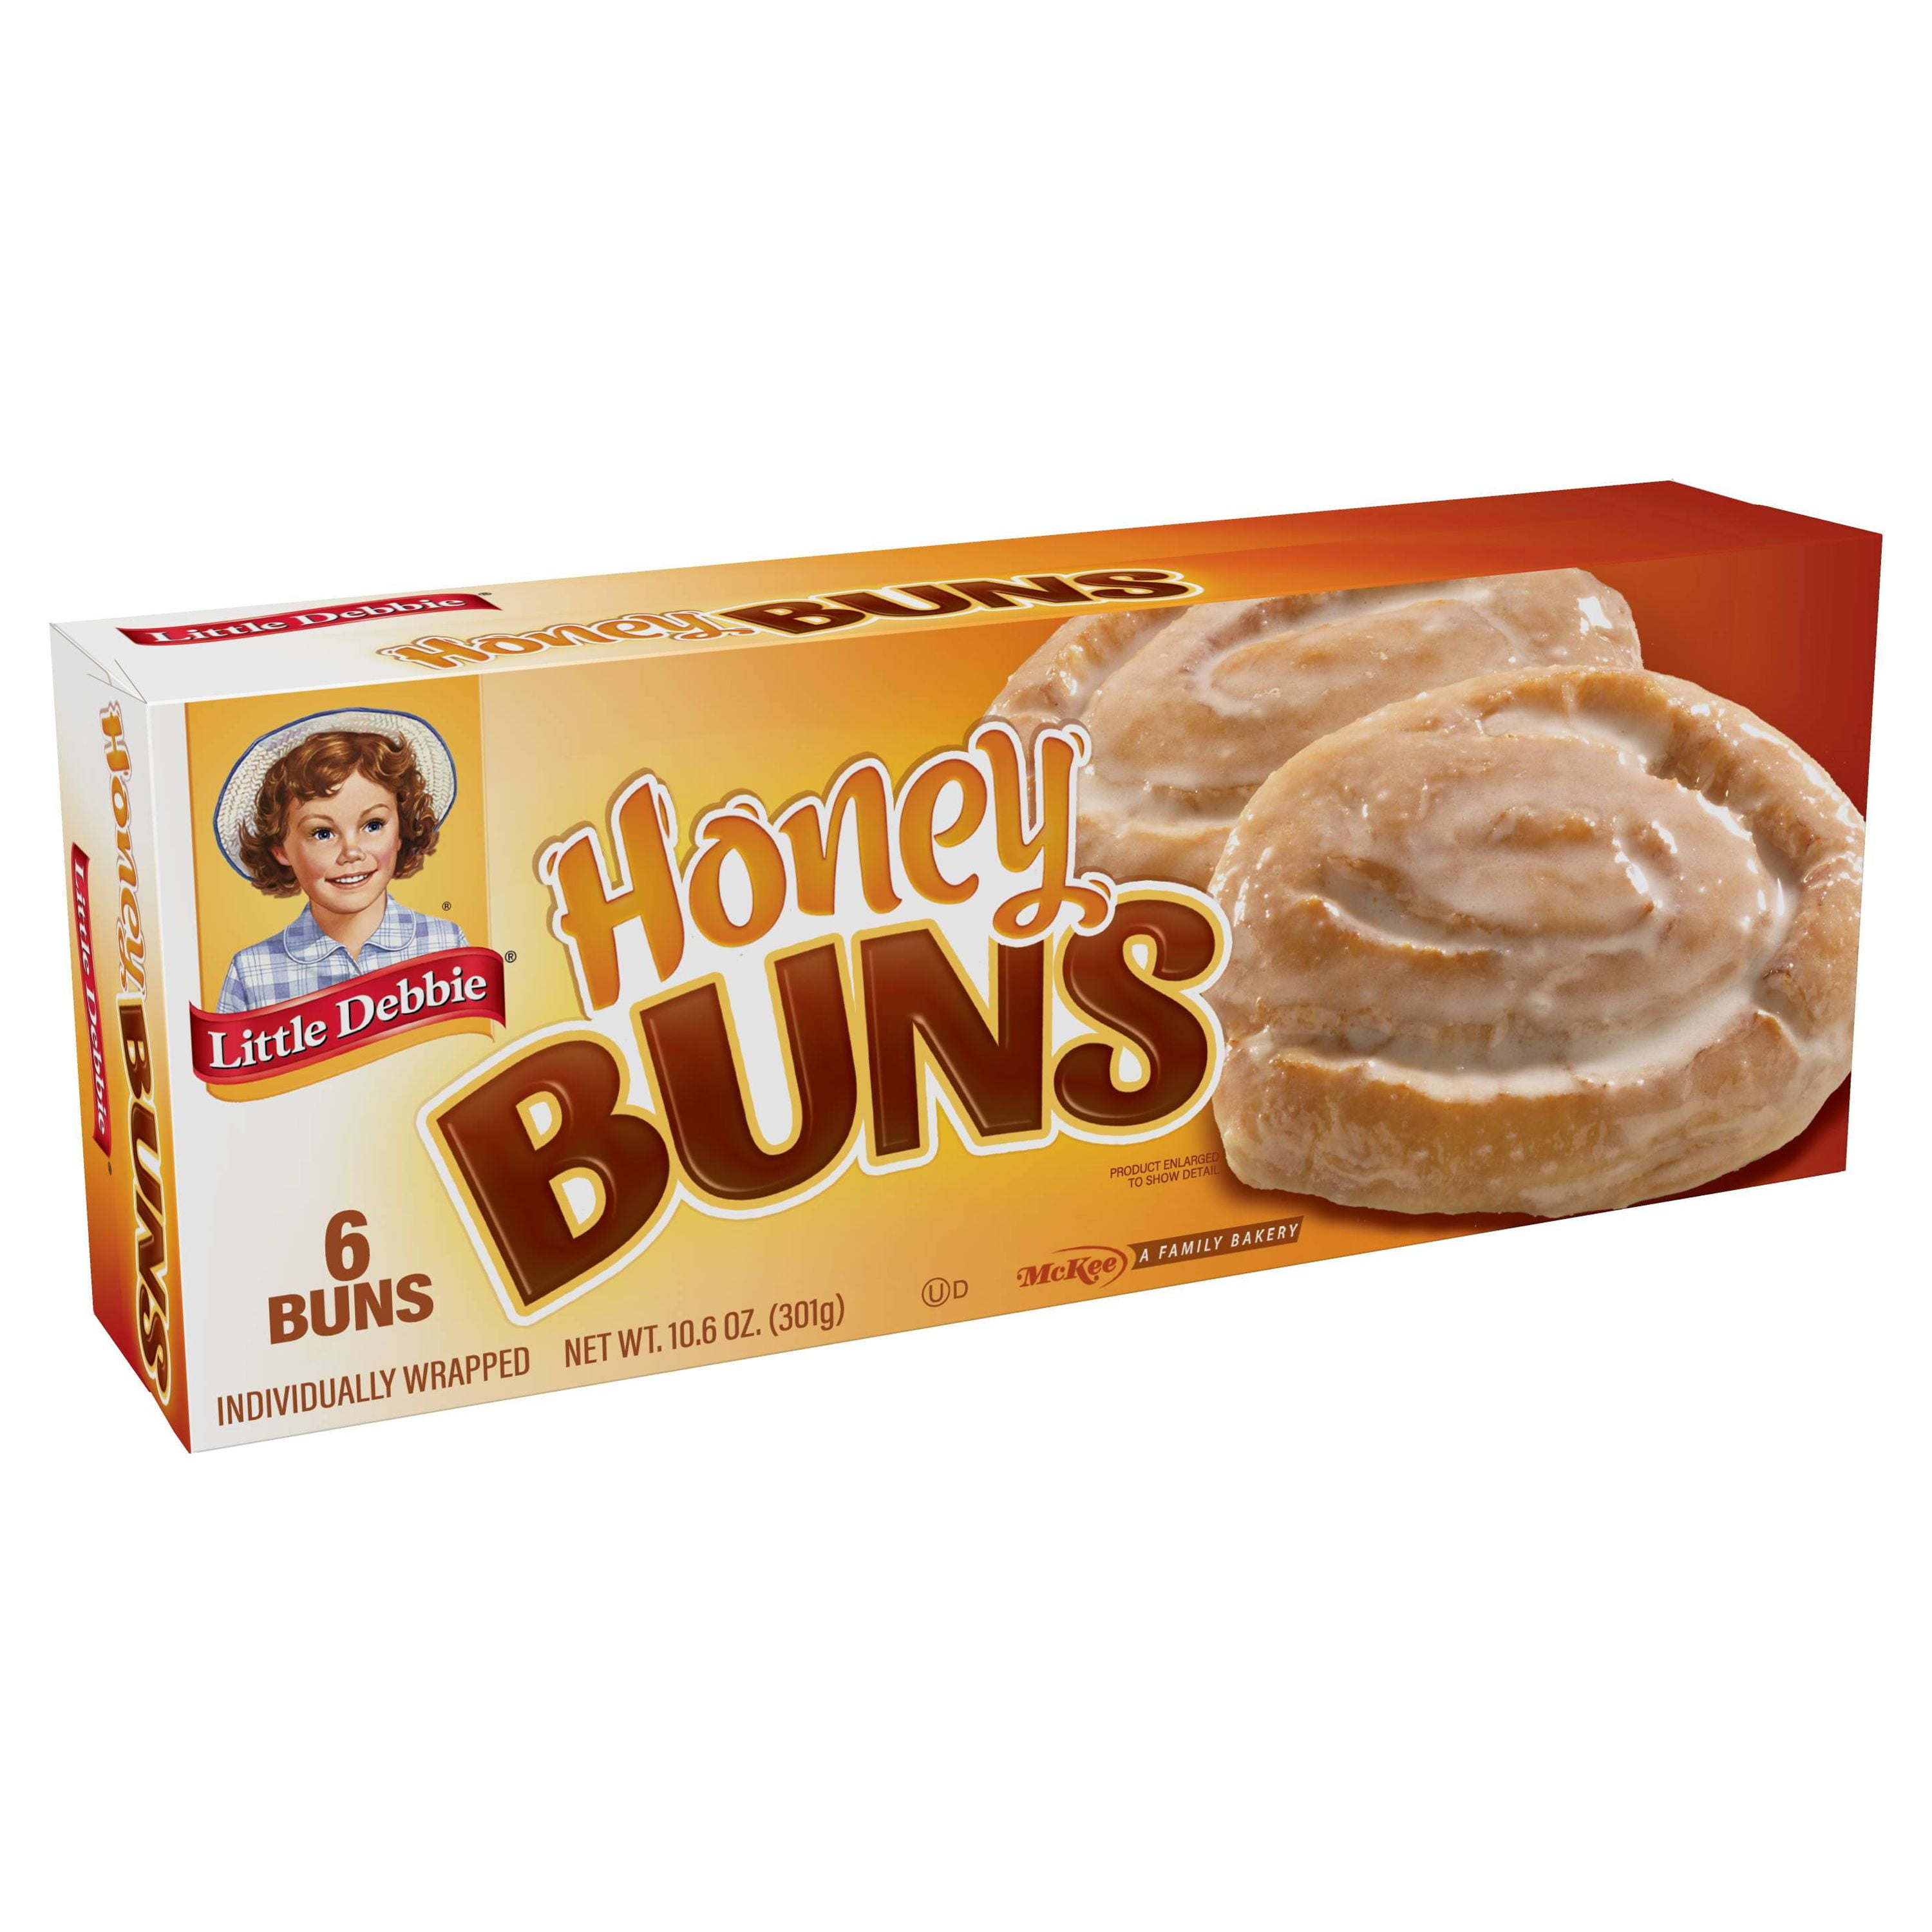 Little Debbie Buns, Honey, 6 Pack - 6 buns, 10.6 oz